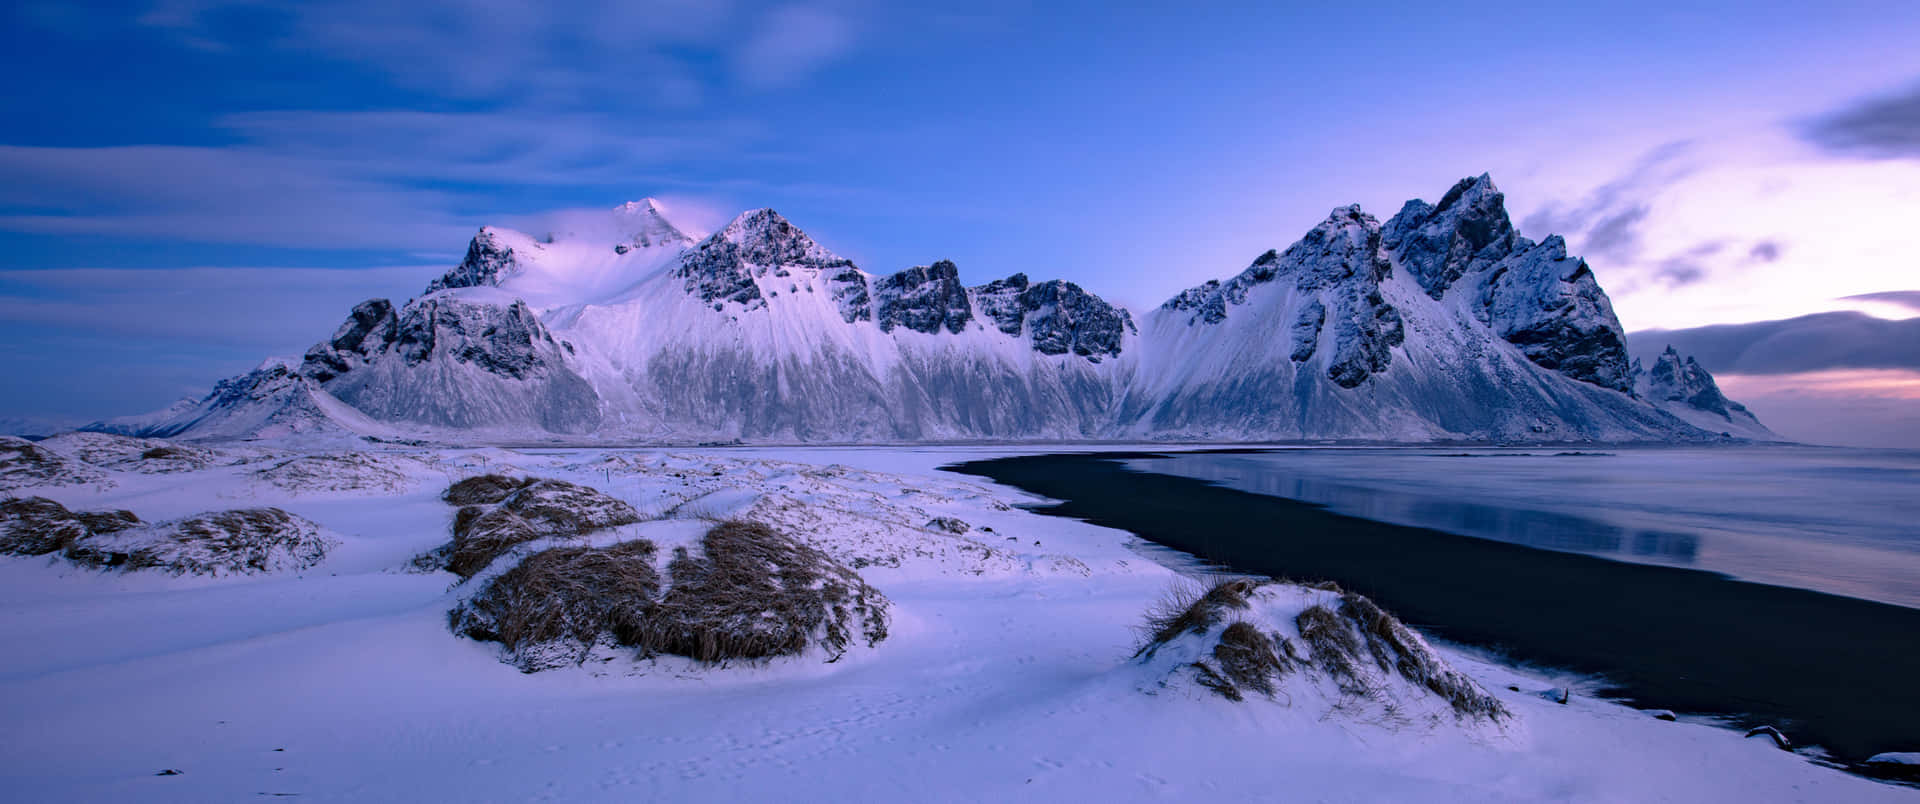 Unaimpresionante Escena Invernal De Árboles De Hoja Perenne Cubiertos De Nieve Y Un Tranquilo Lago. Fondo de pantalla